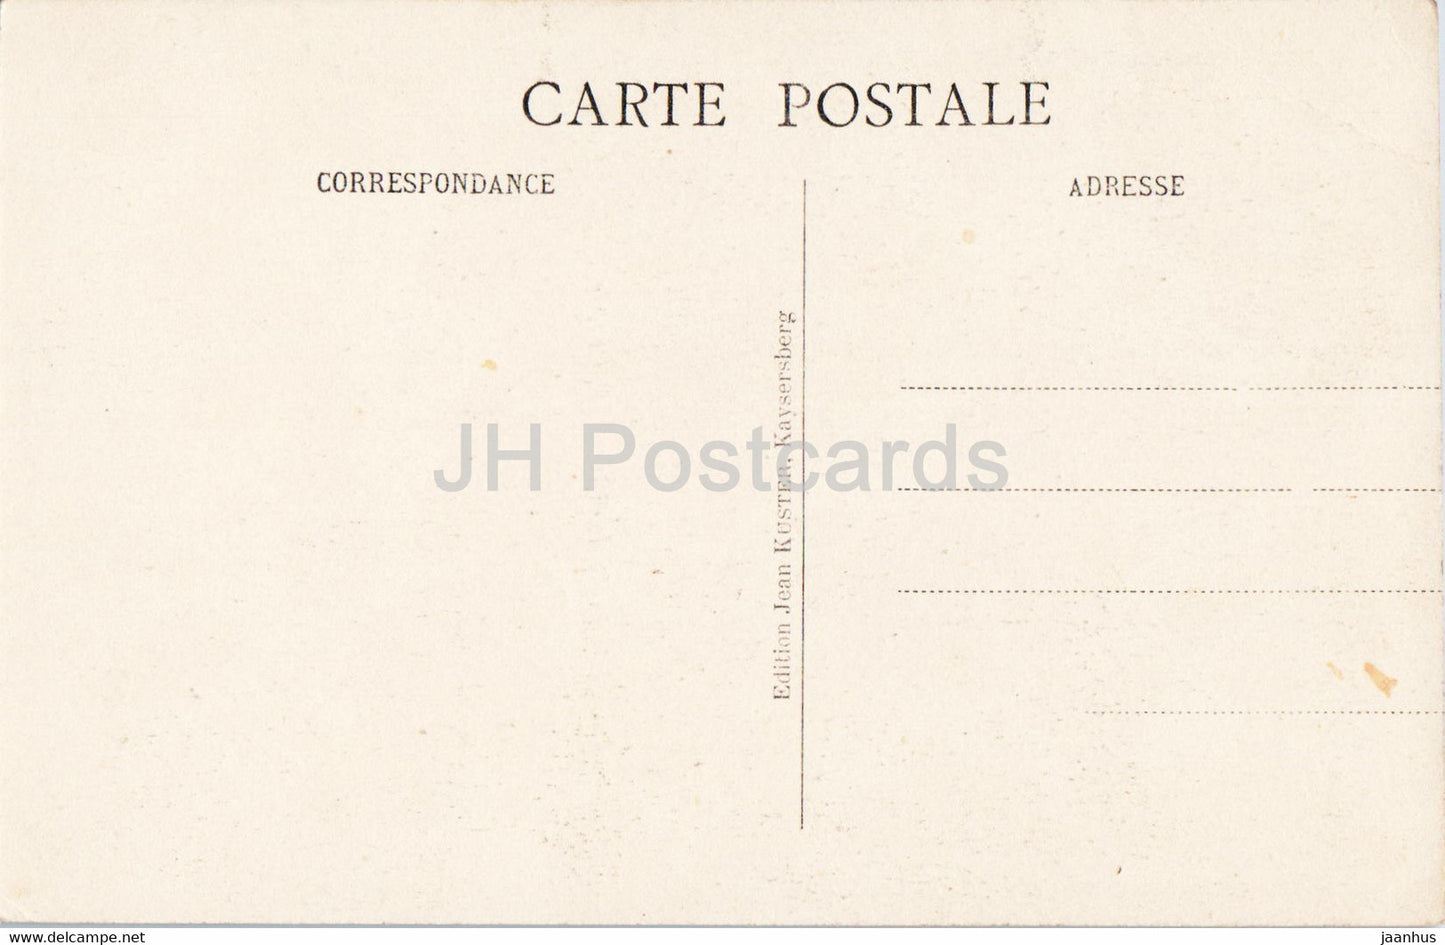 Le Miracle des Trois Epis - carte postale ancienne - France - inutilisée